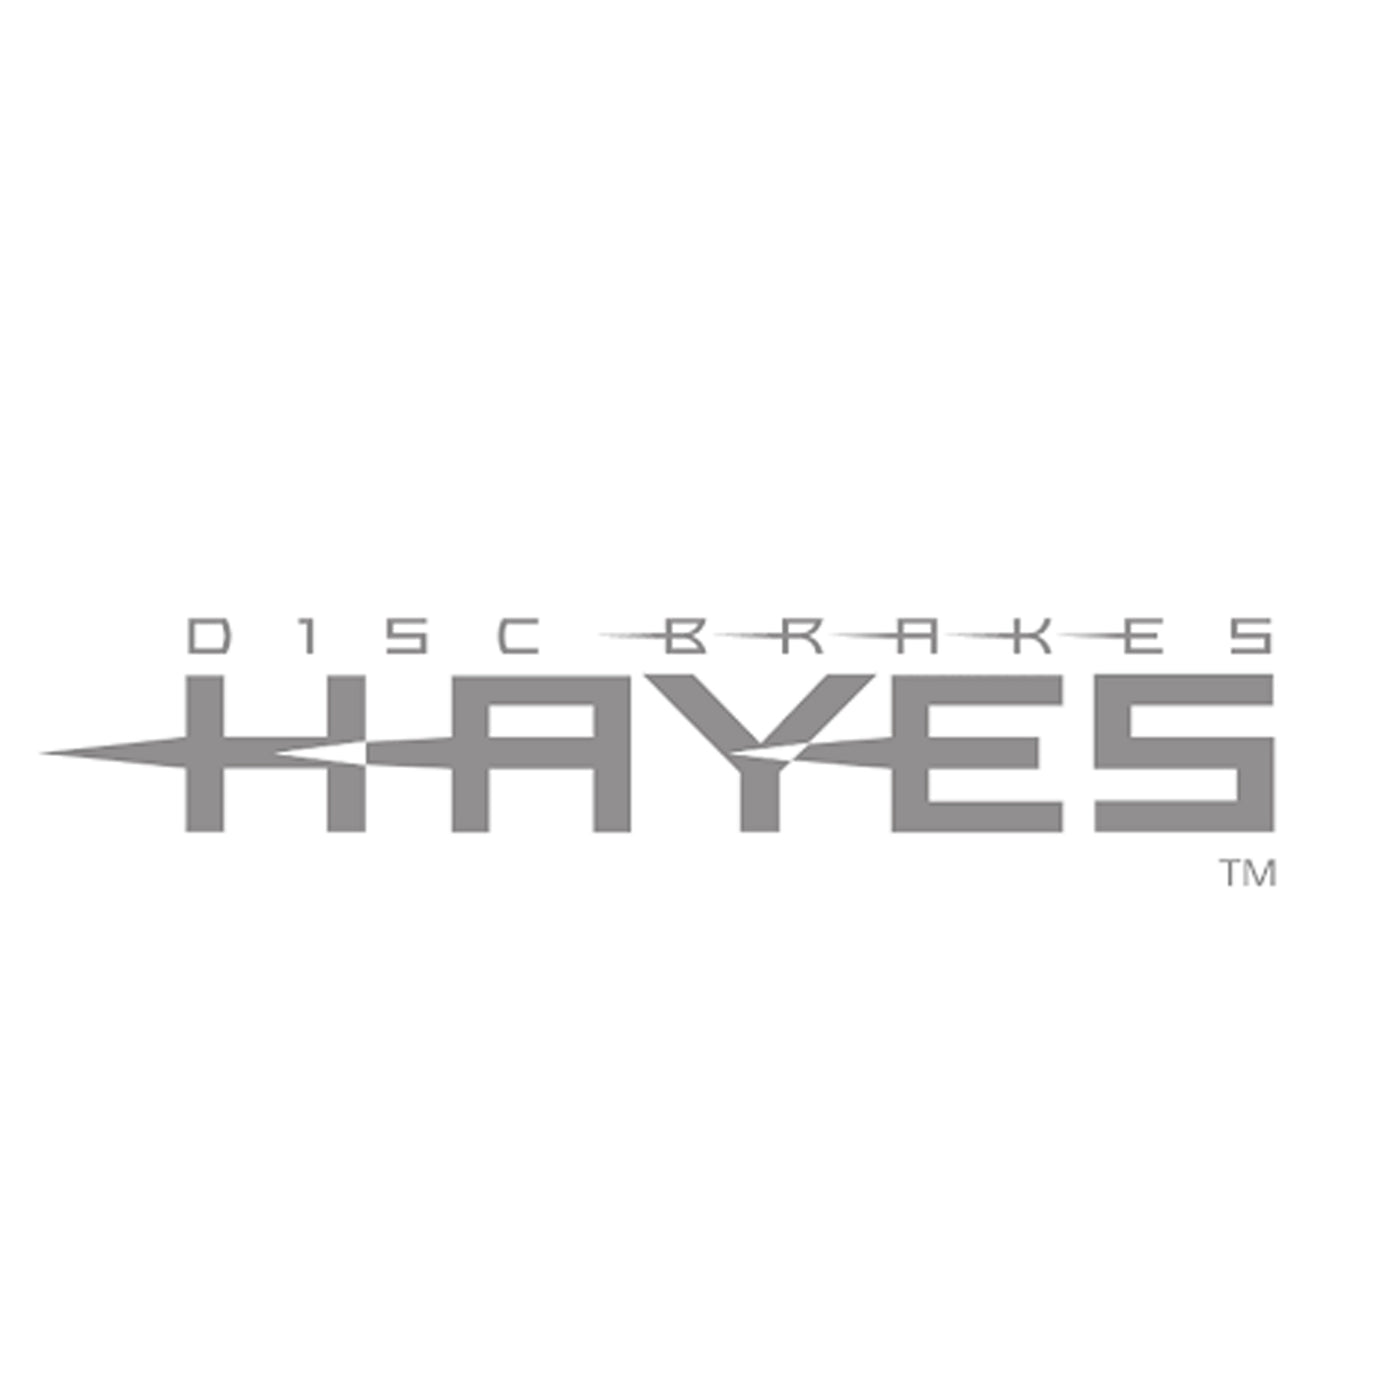 Hayes Dominion T2 Brake kit